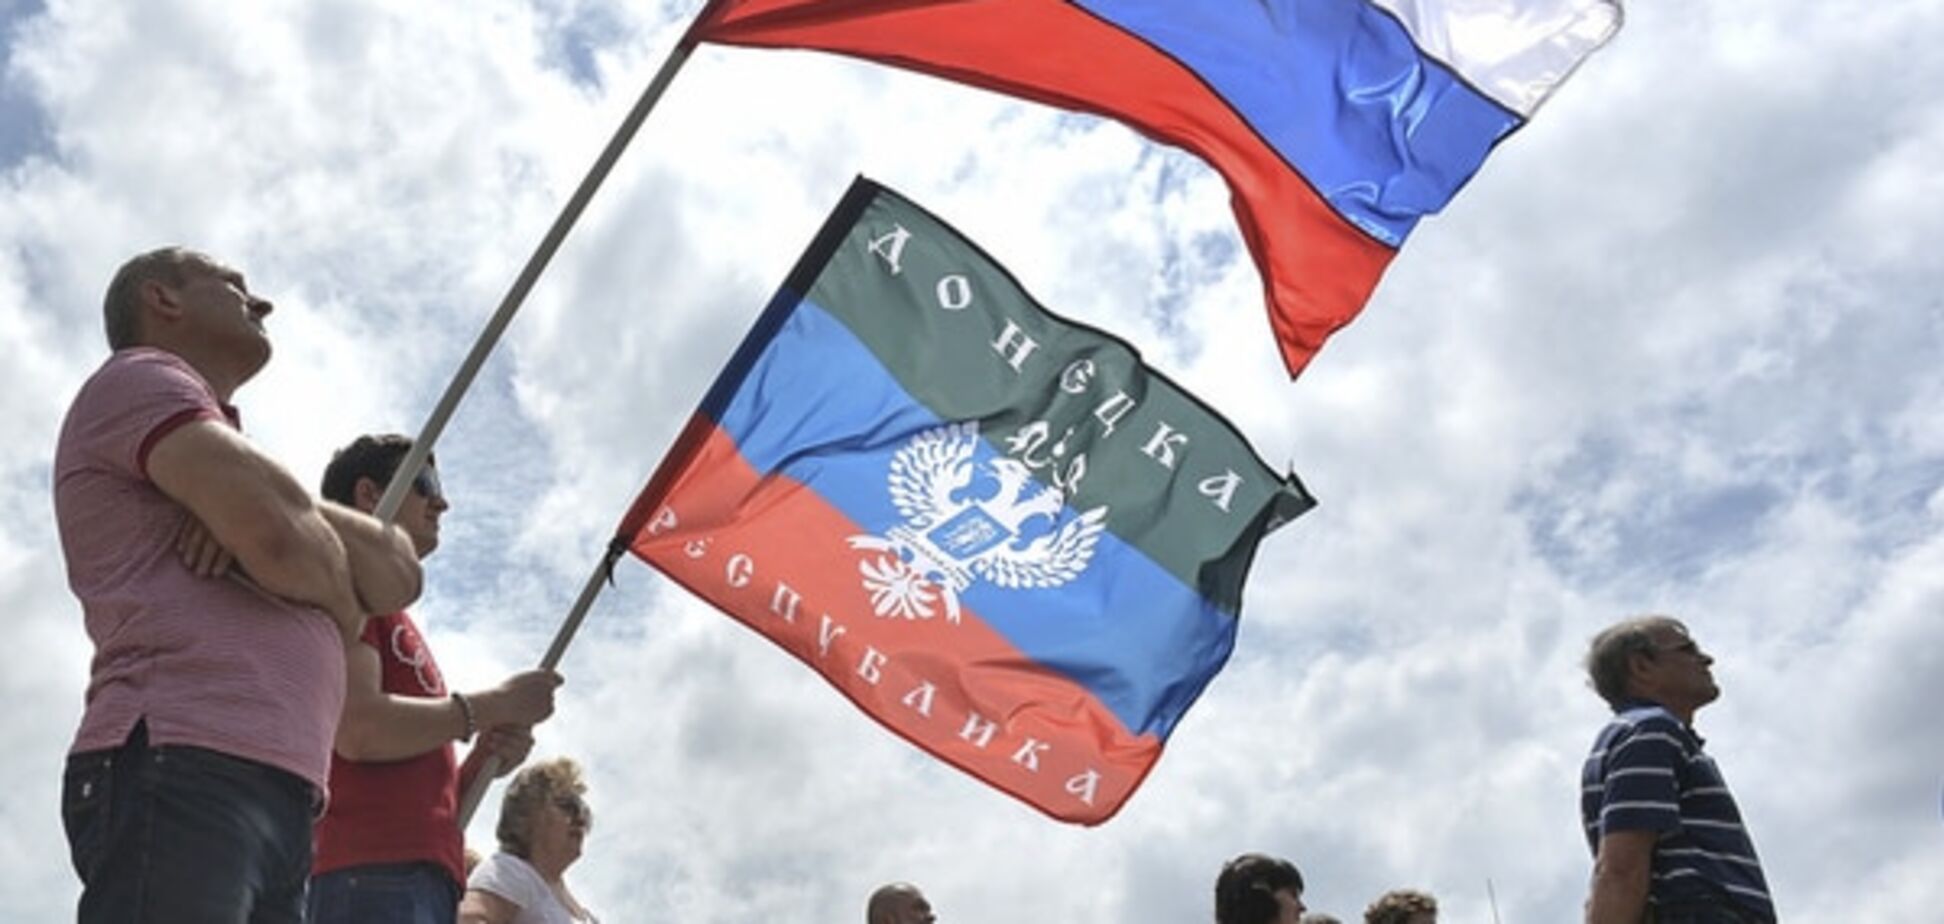 На Банковой готовят закон о выборах в оккупированном Донбассе - СМИ